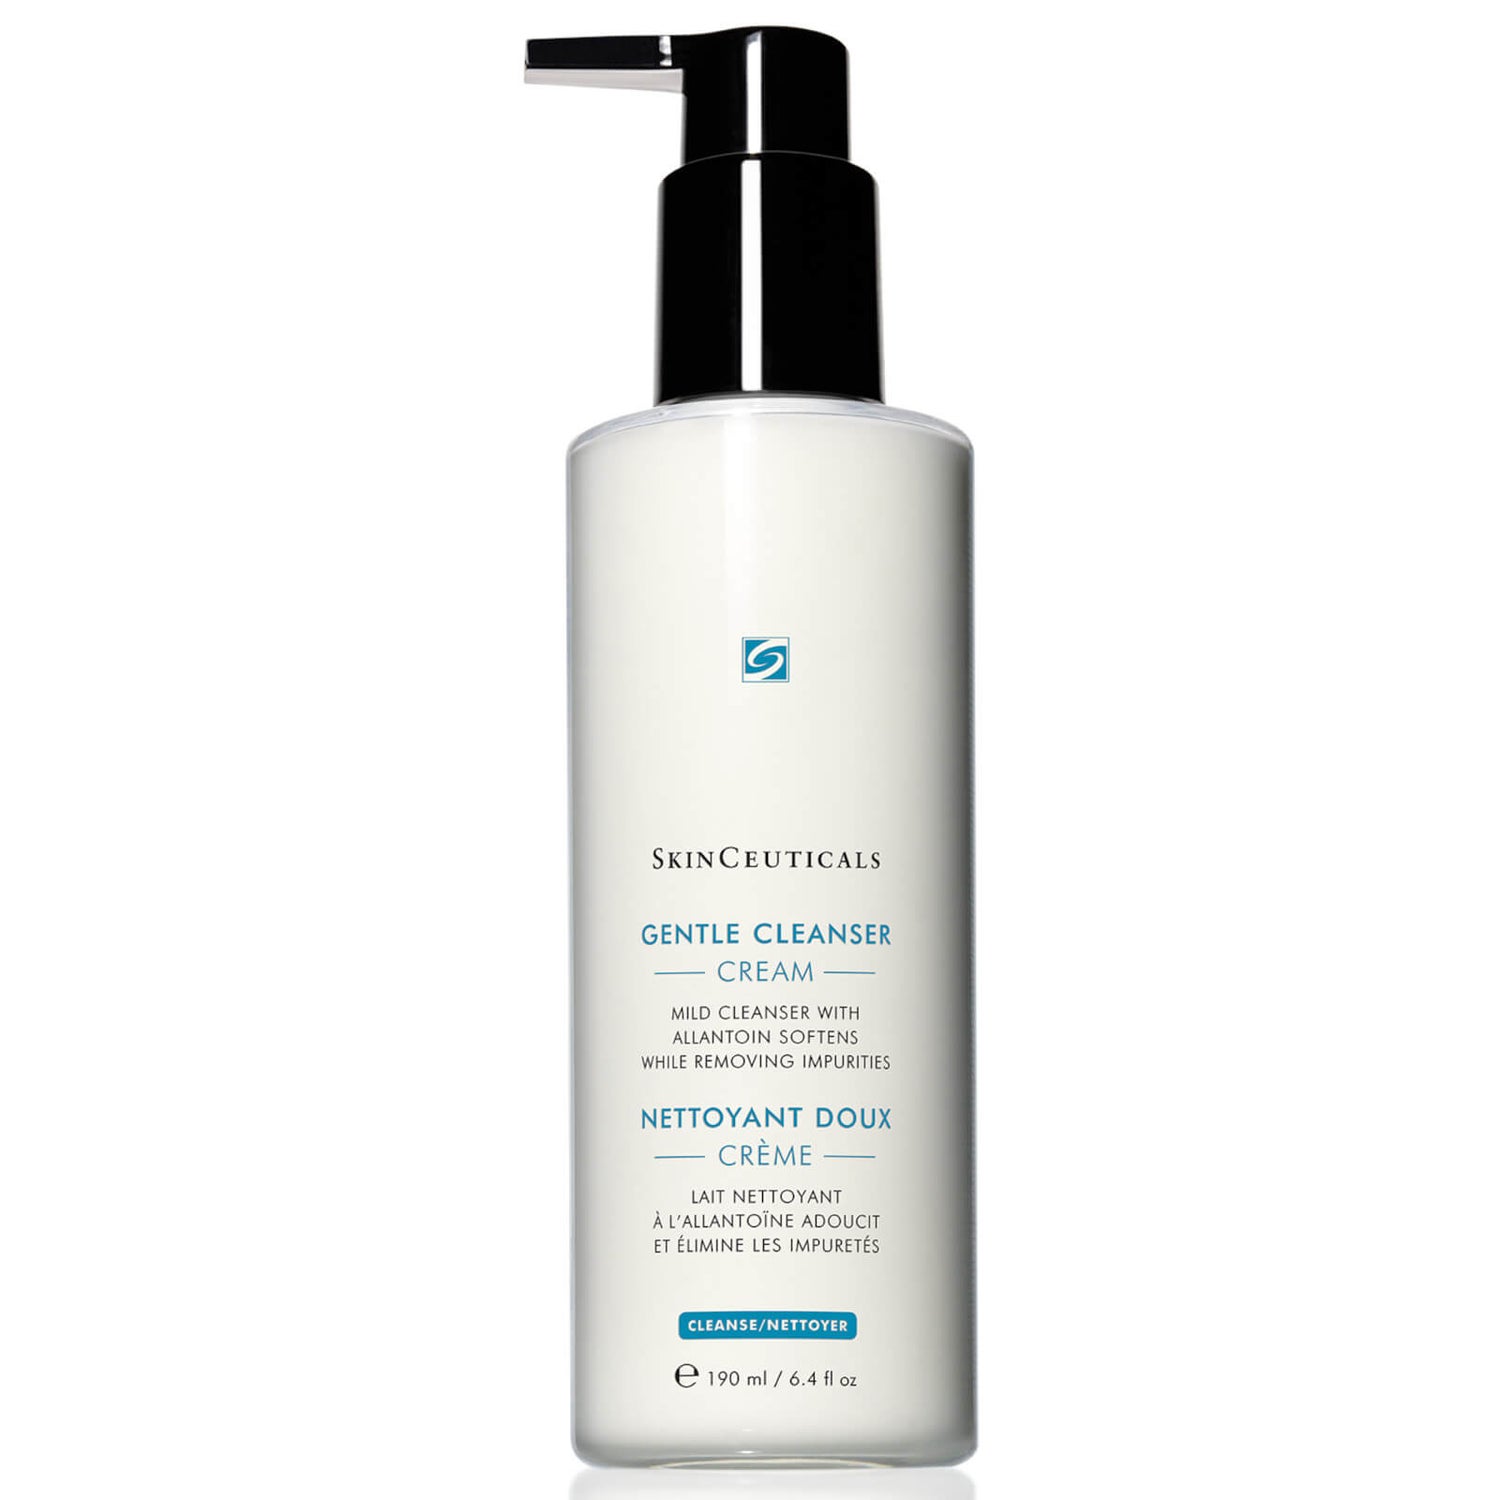 SkinCeuticals Gentle Cleanser (6.42 fl. oz.)